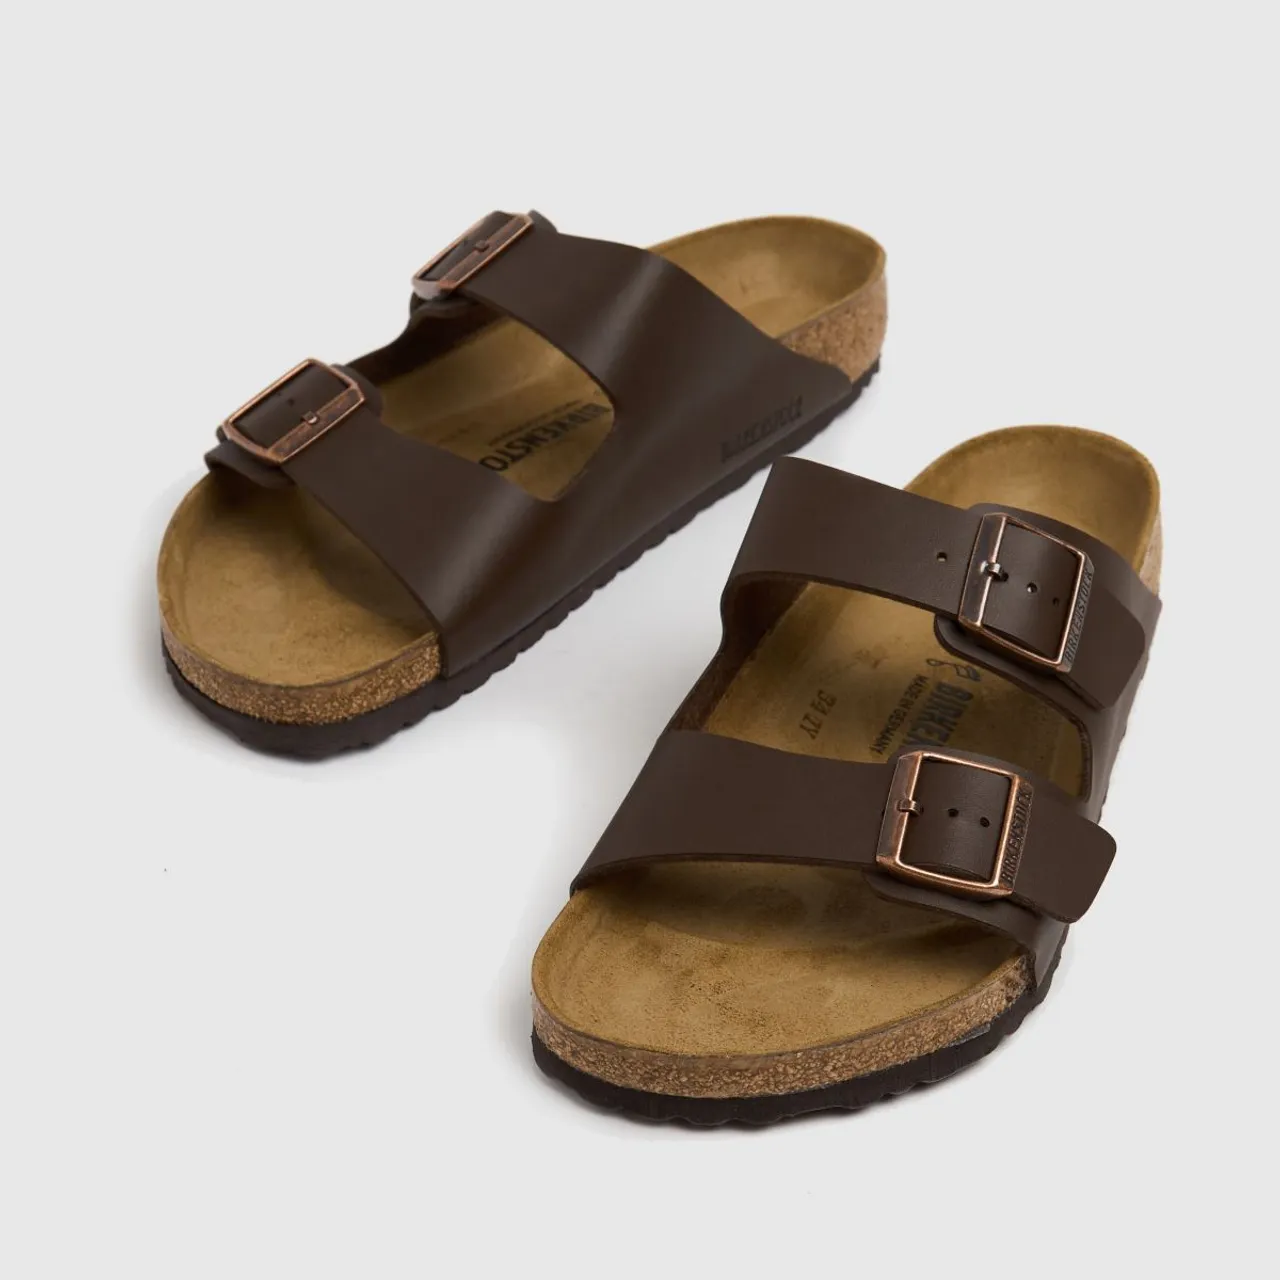 Birkenstock Arizona Sandals In Brown